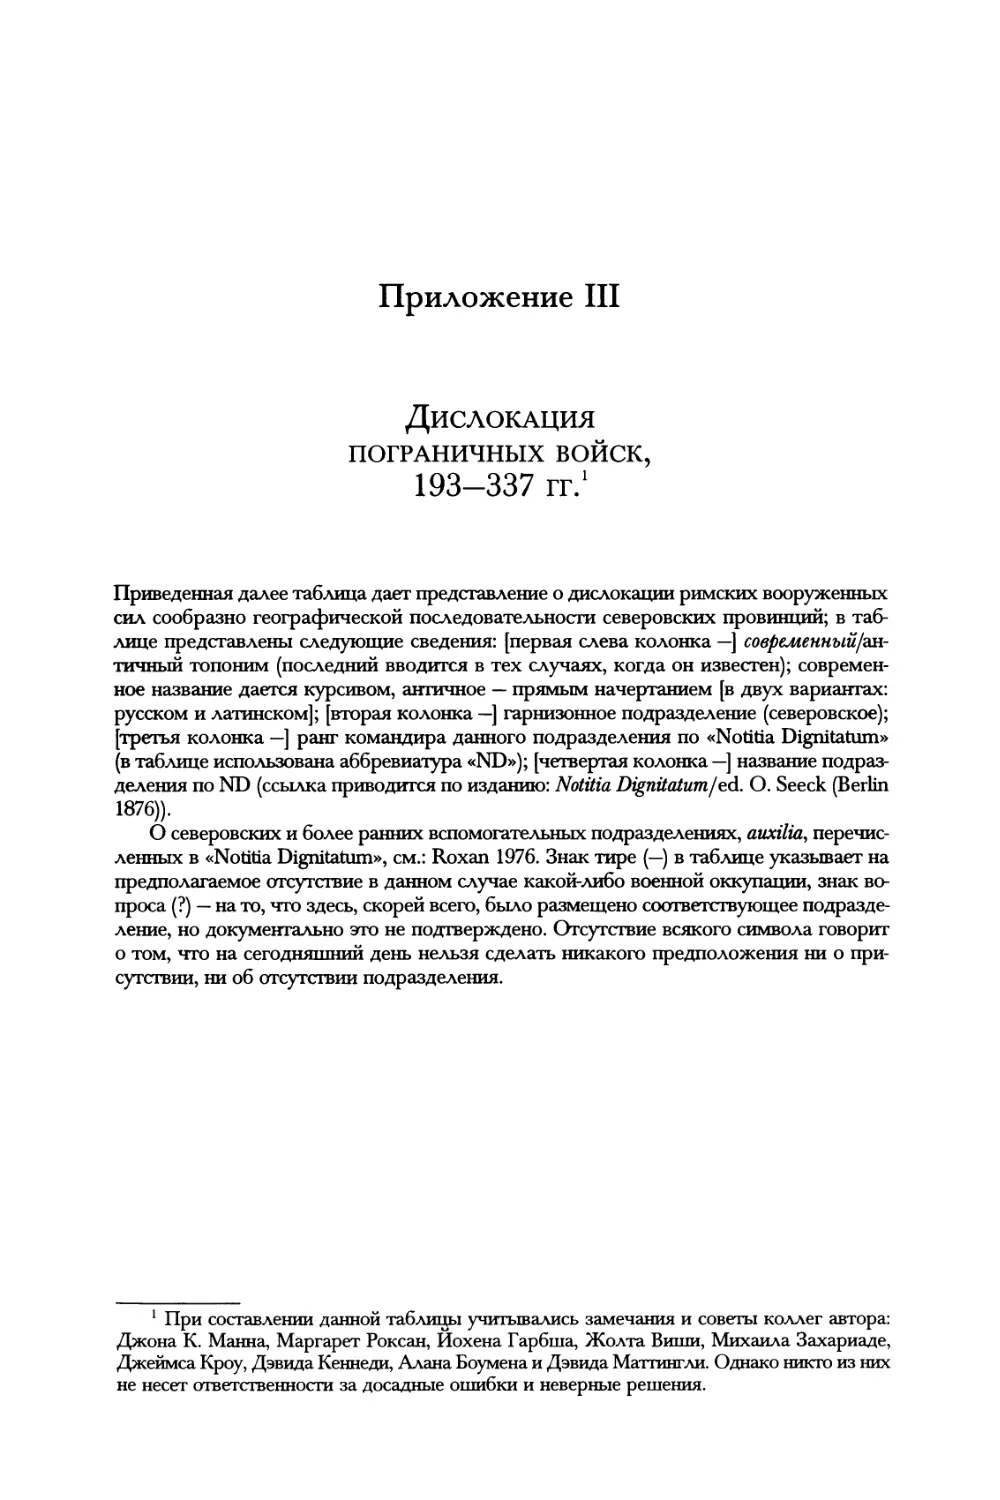 Приложение III. Дислокация пограничных войск, 193-337 гг.